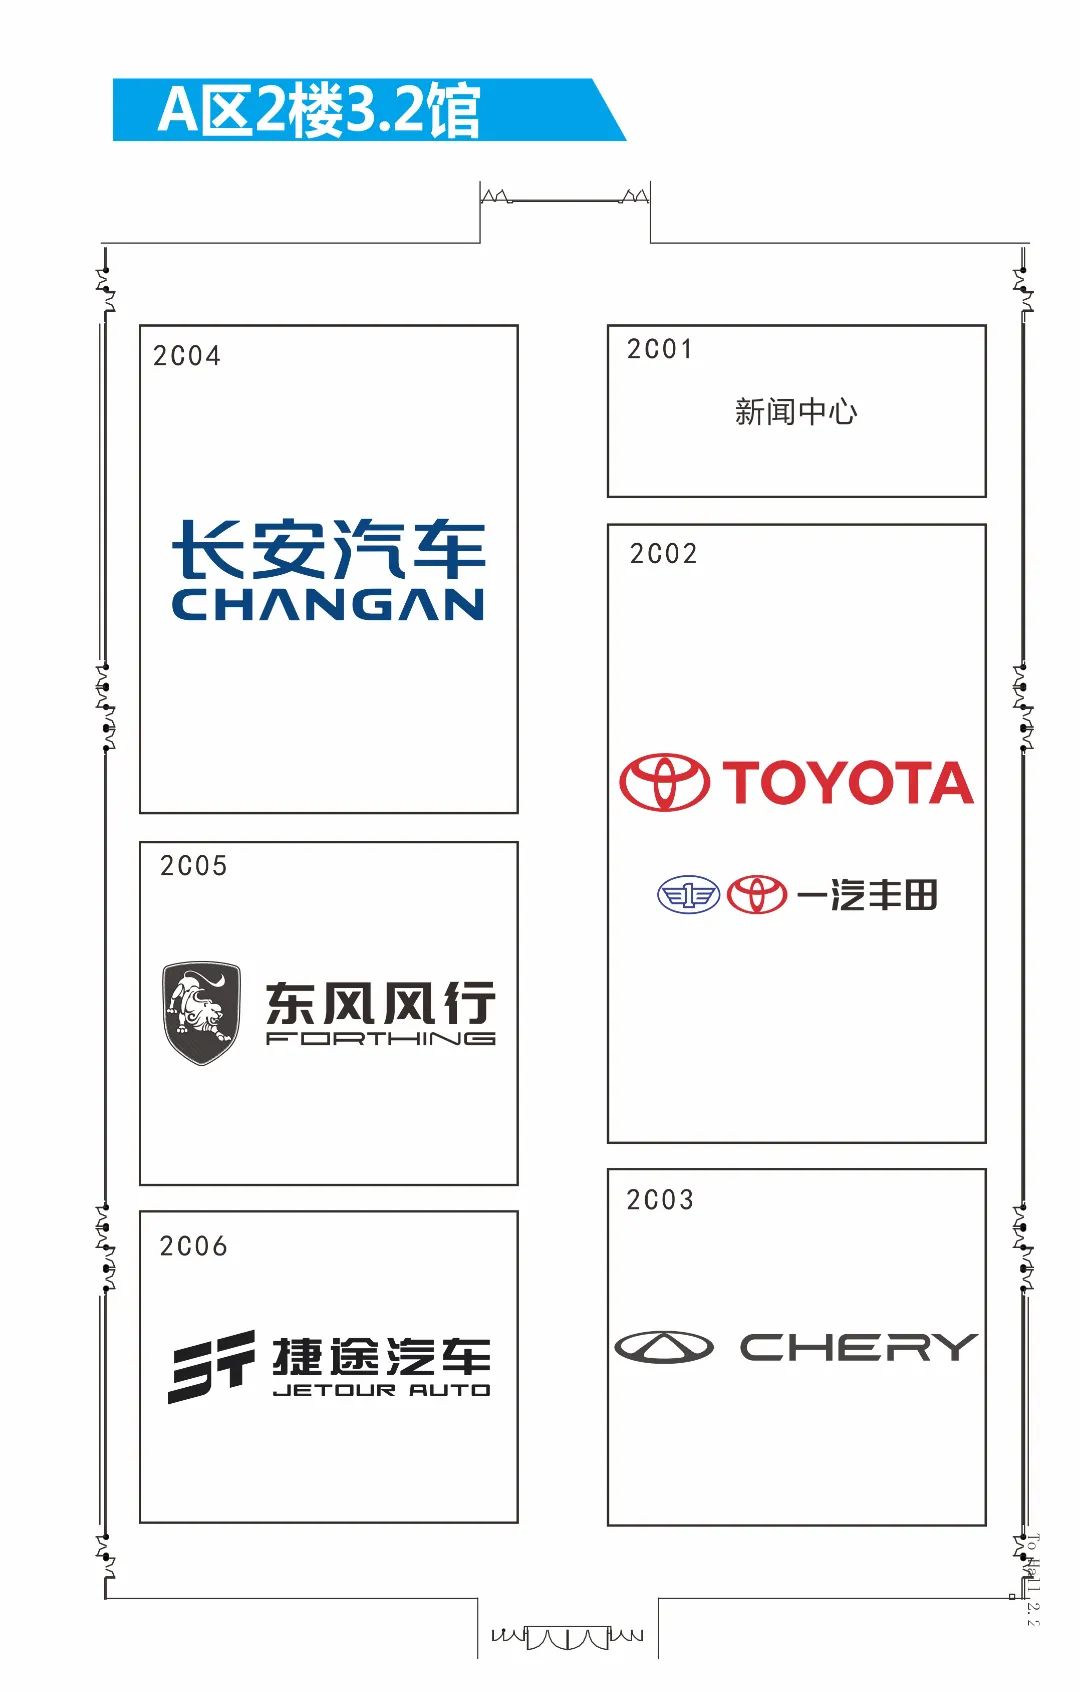 第二十届广州国际车展展位图来啦！